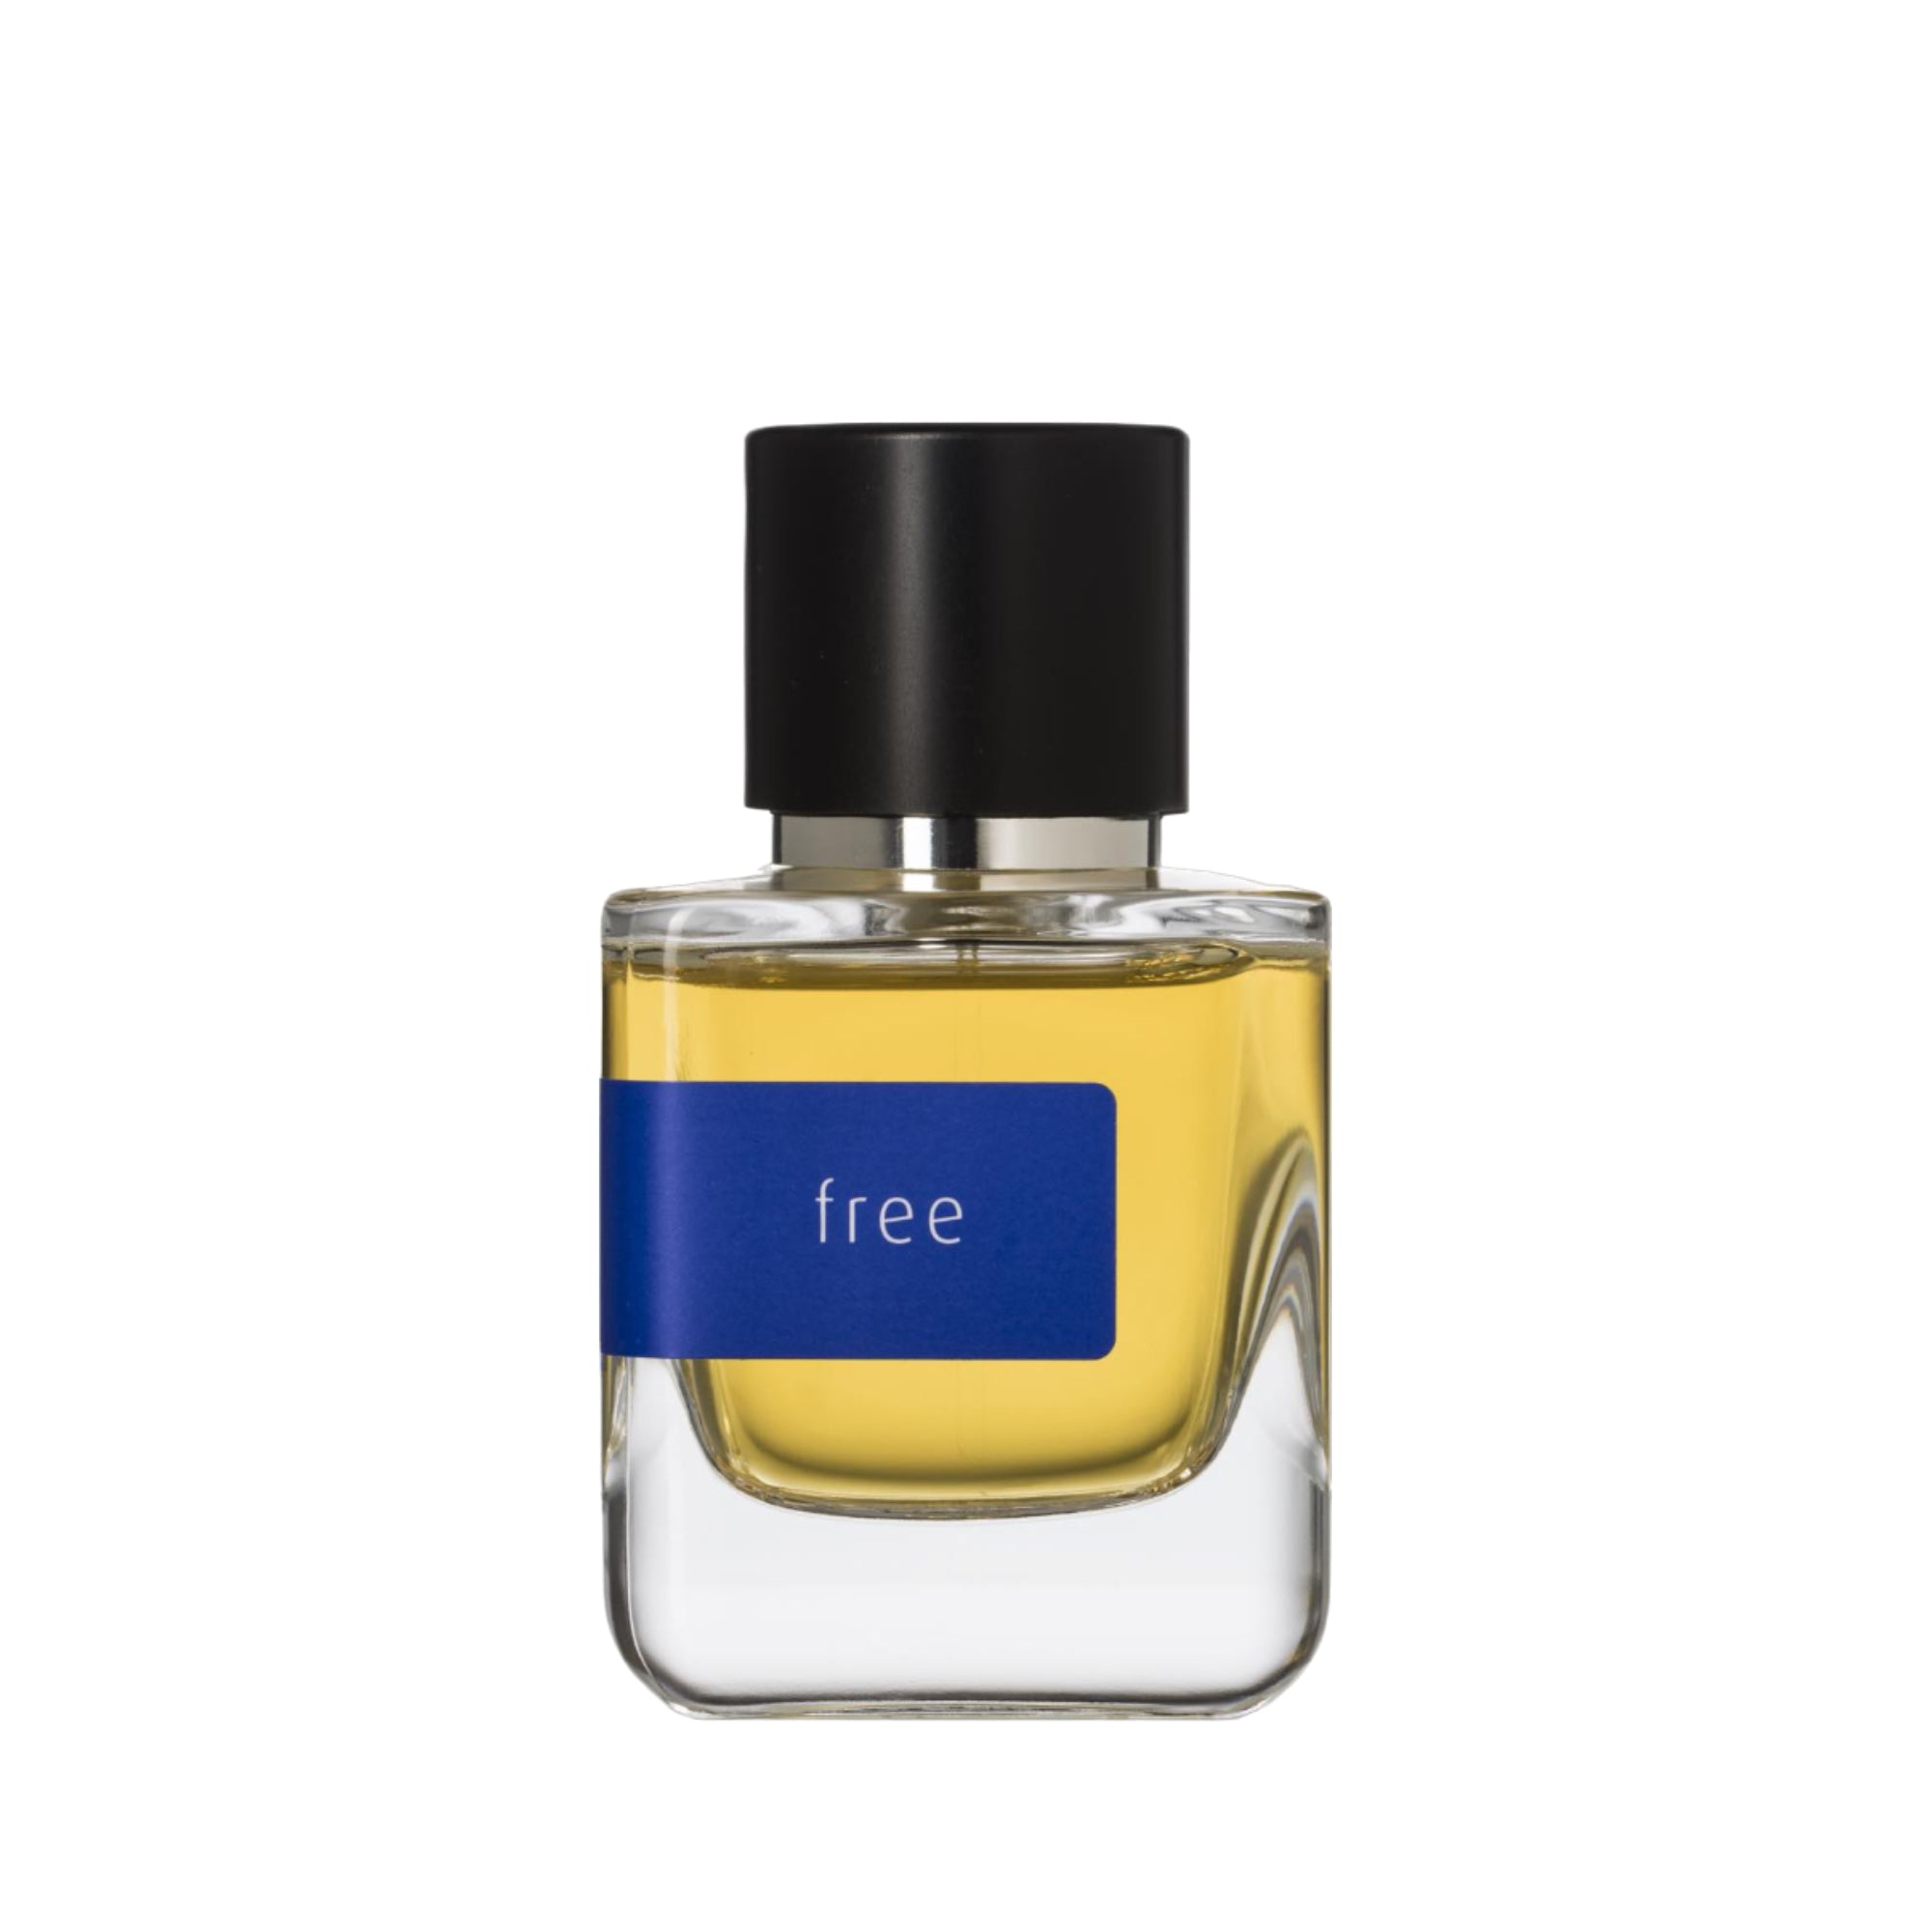 Free Eau de Parfum